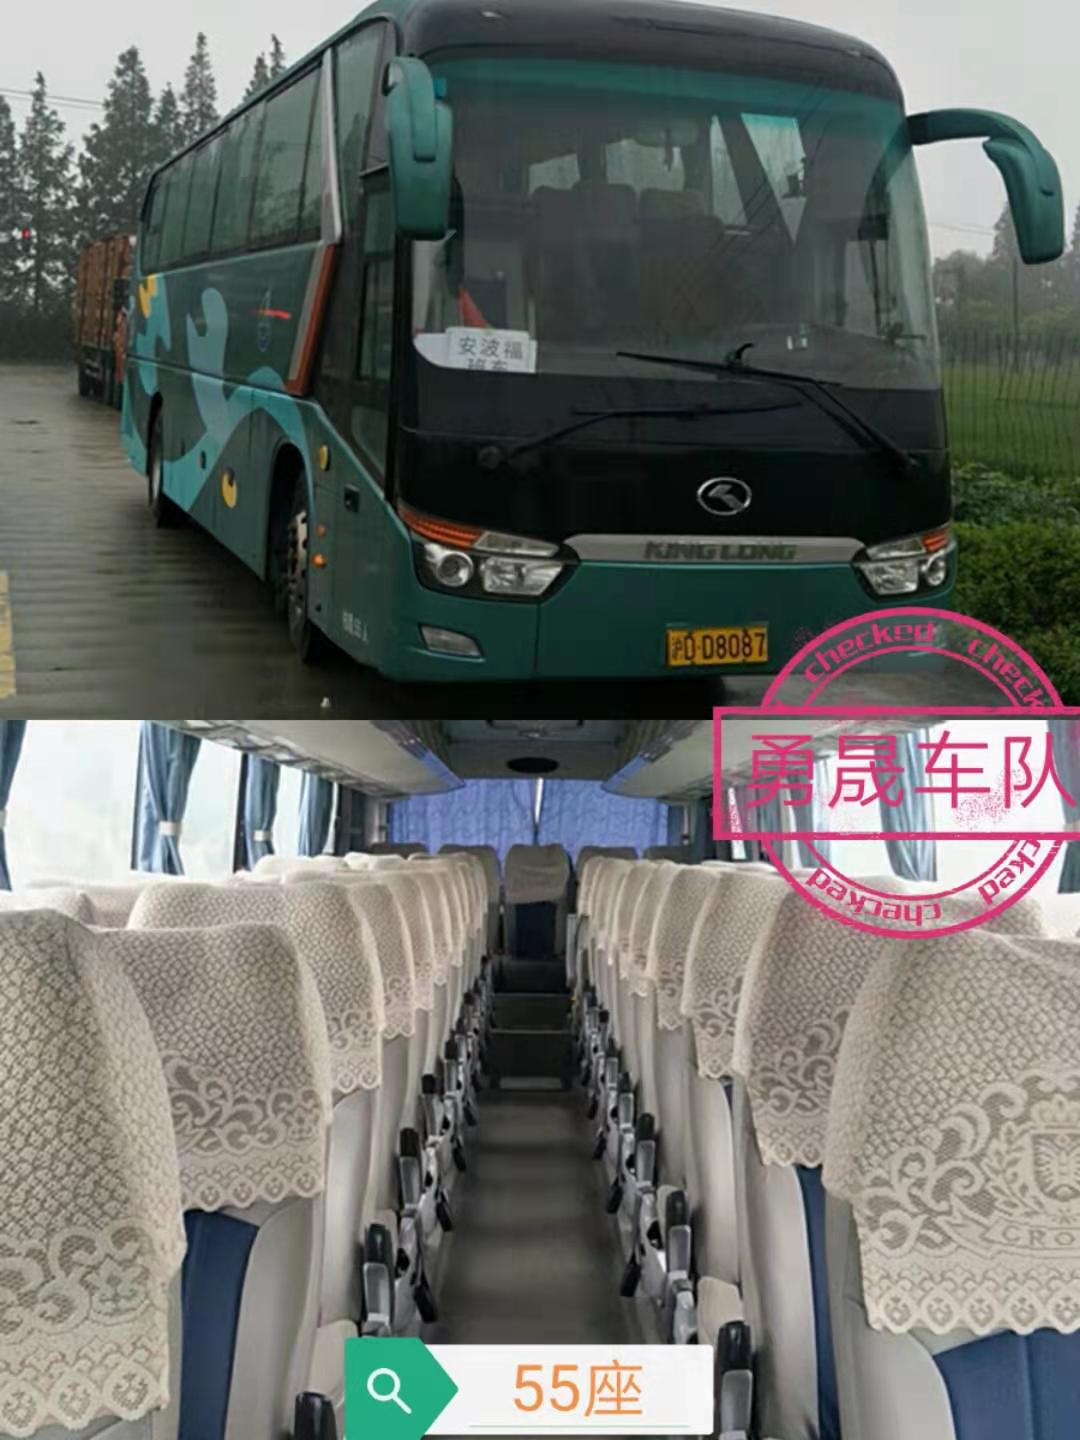 55座旅游大巴-上海大巴班车租赁公司提醒在乘车时切勿乱扔垃圾